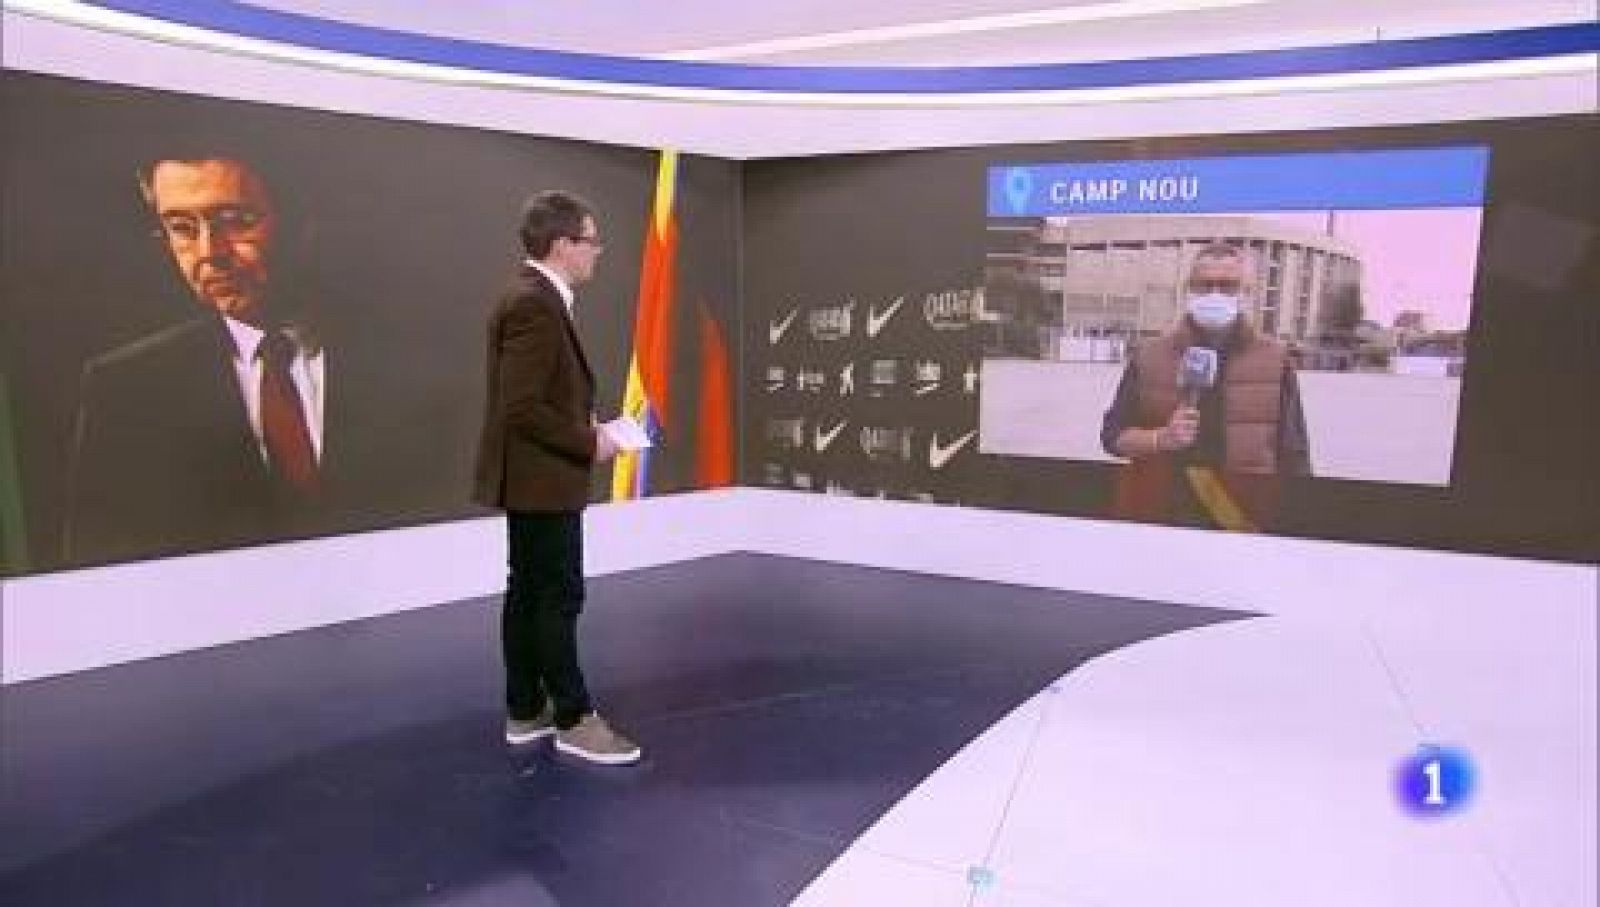 Sale adelante la moción de censura a la Junta de Bartomeu en el FC Barcelona